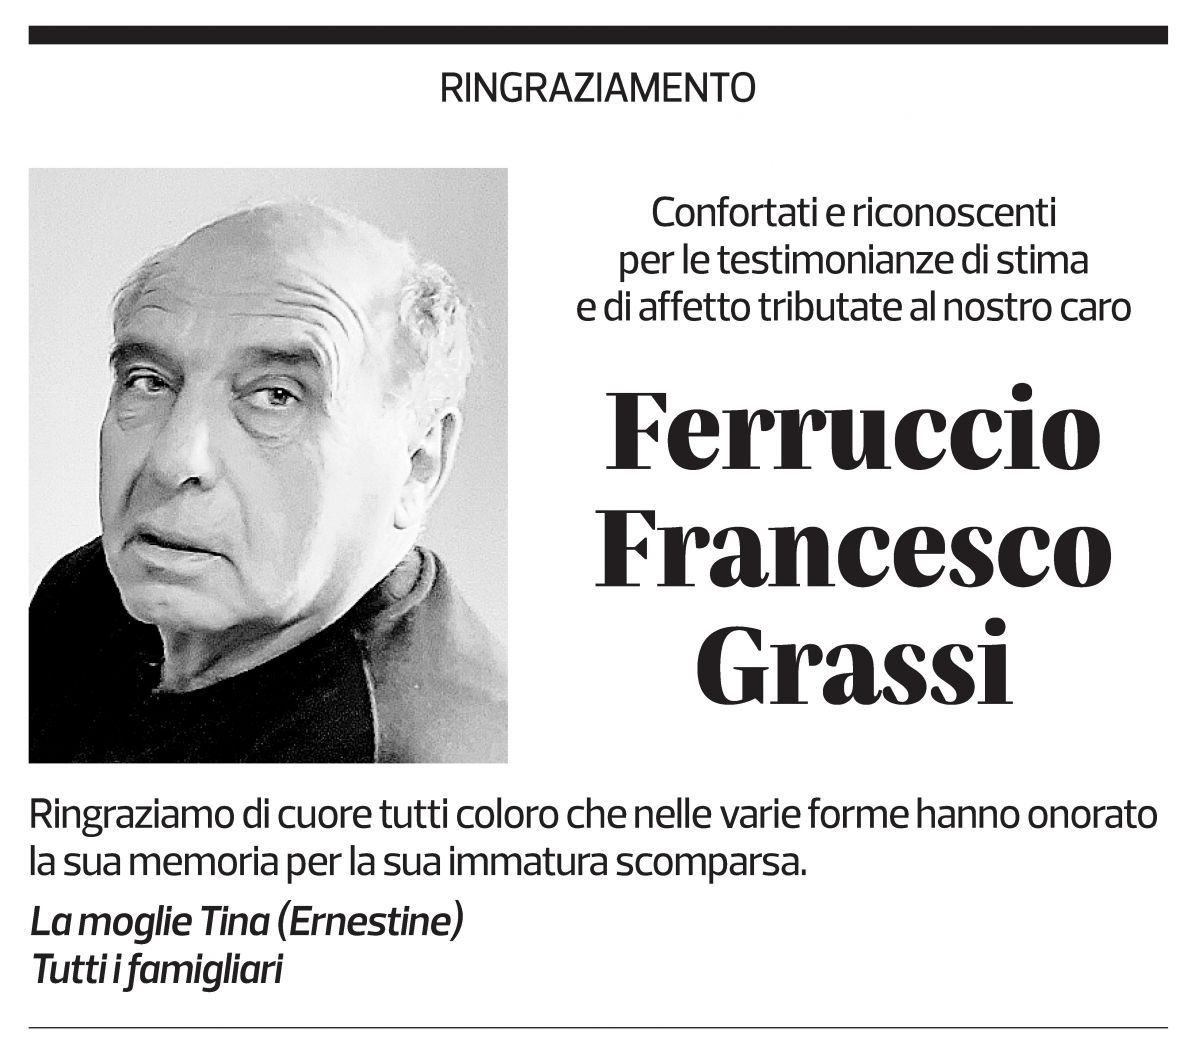 Annuncio funebre Ferruccio Francesco Grassi